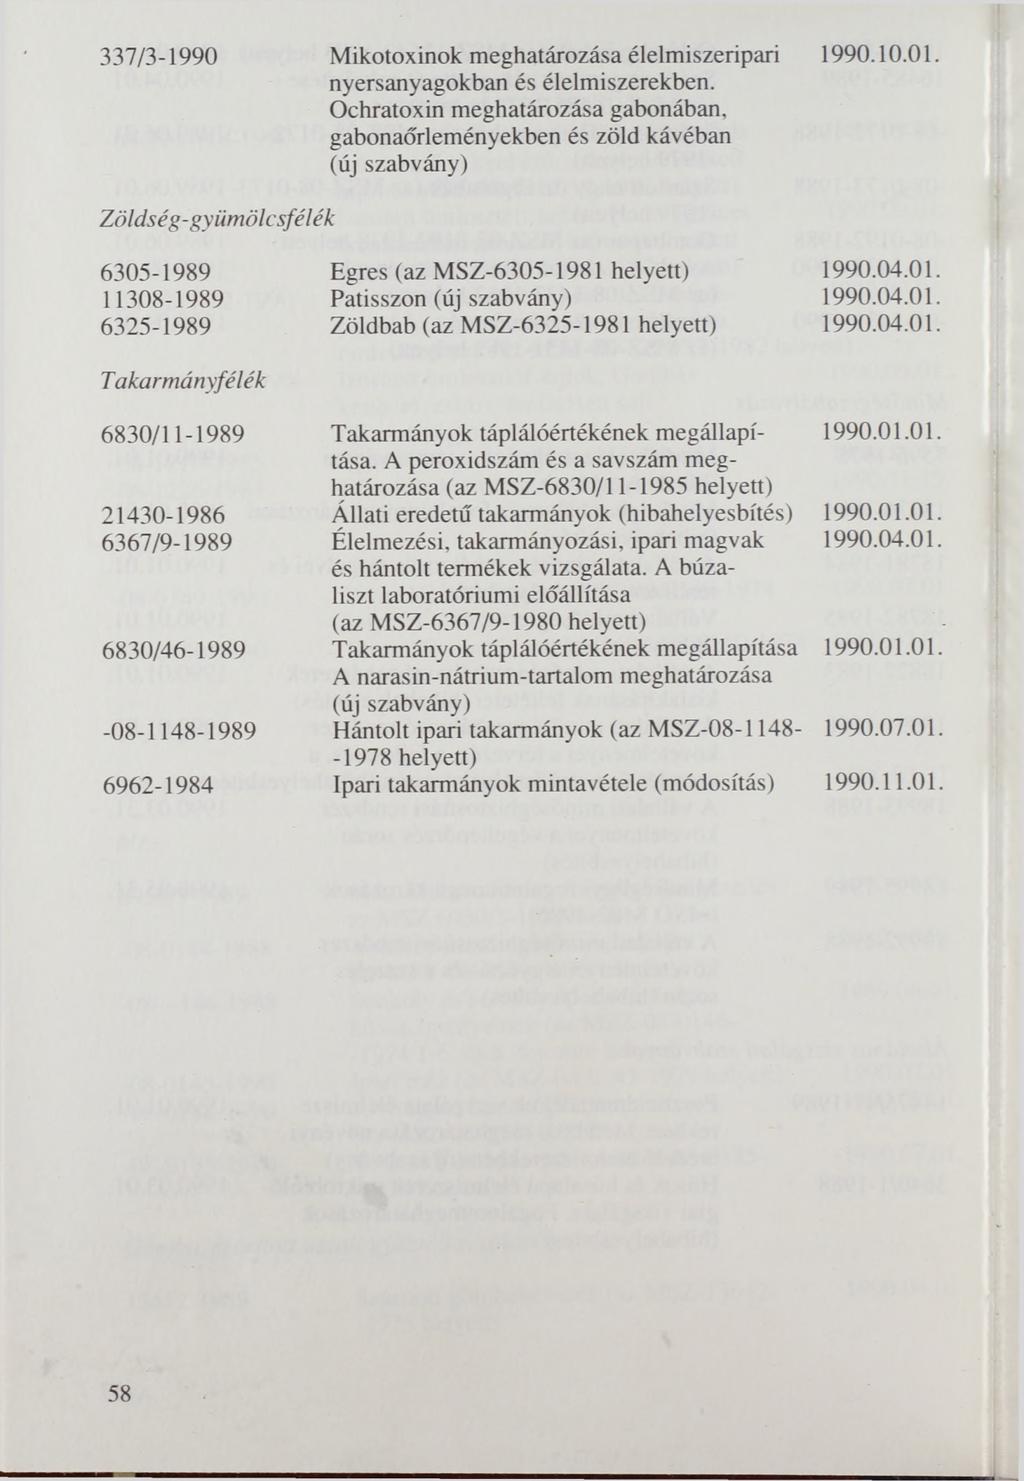 337/3-1990 Mikotoxinok meghatározása élelmiszeripari nyersanyagokban és élelmiszerekben. Ochratoxin meghatározása gabonában, gabonaőrleményekben és zöld kávéban 1990.10.01.